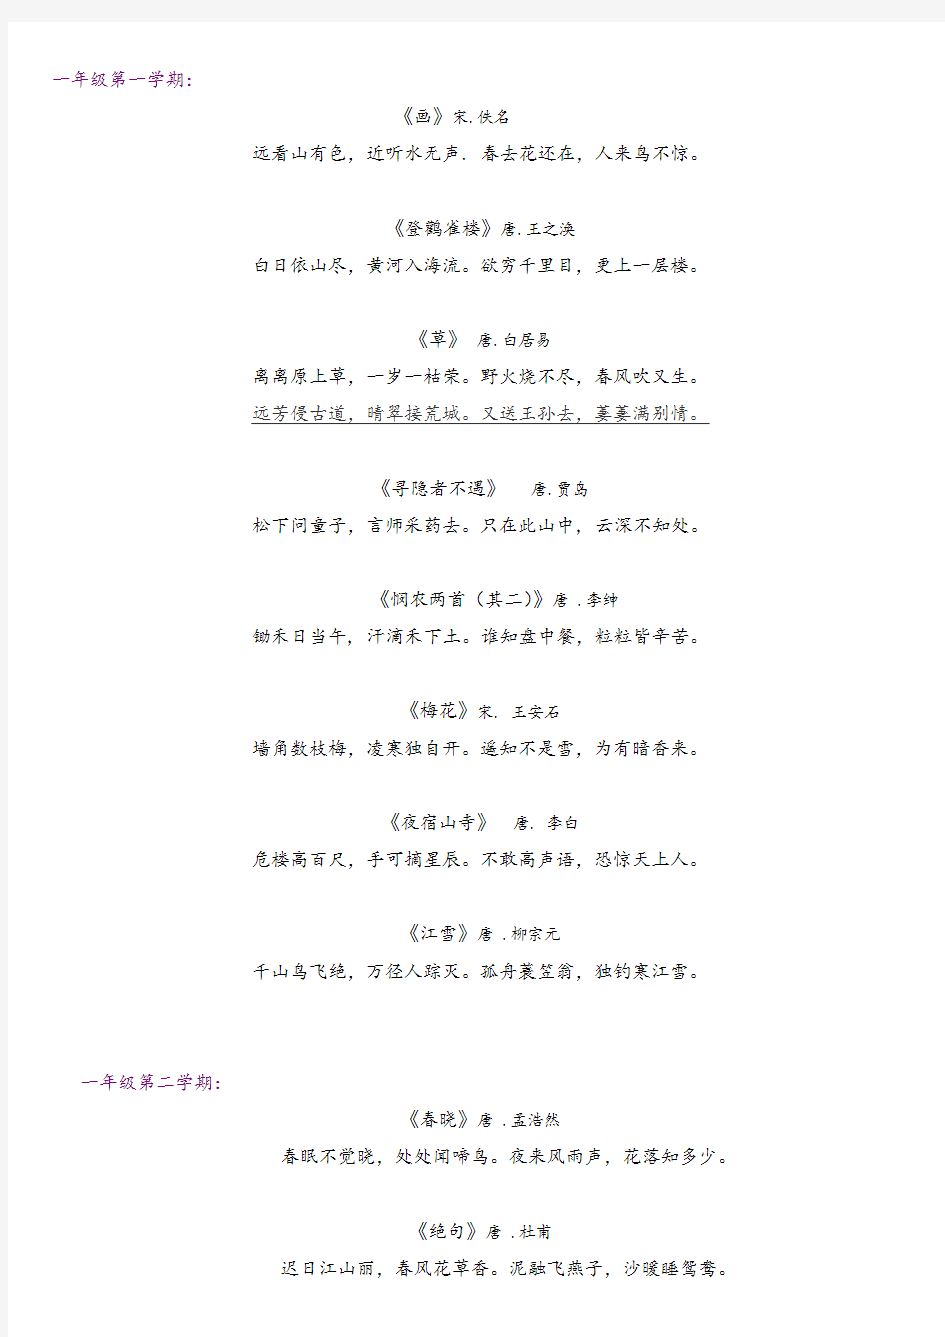 上海小学一到五年级古诗完整篇